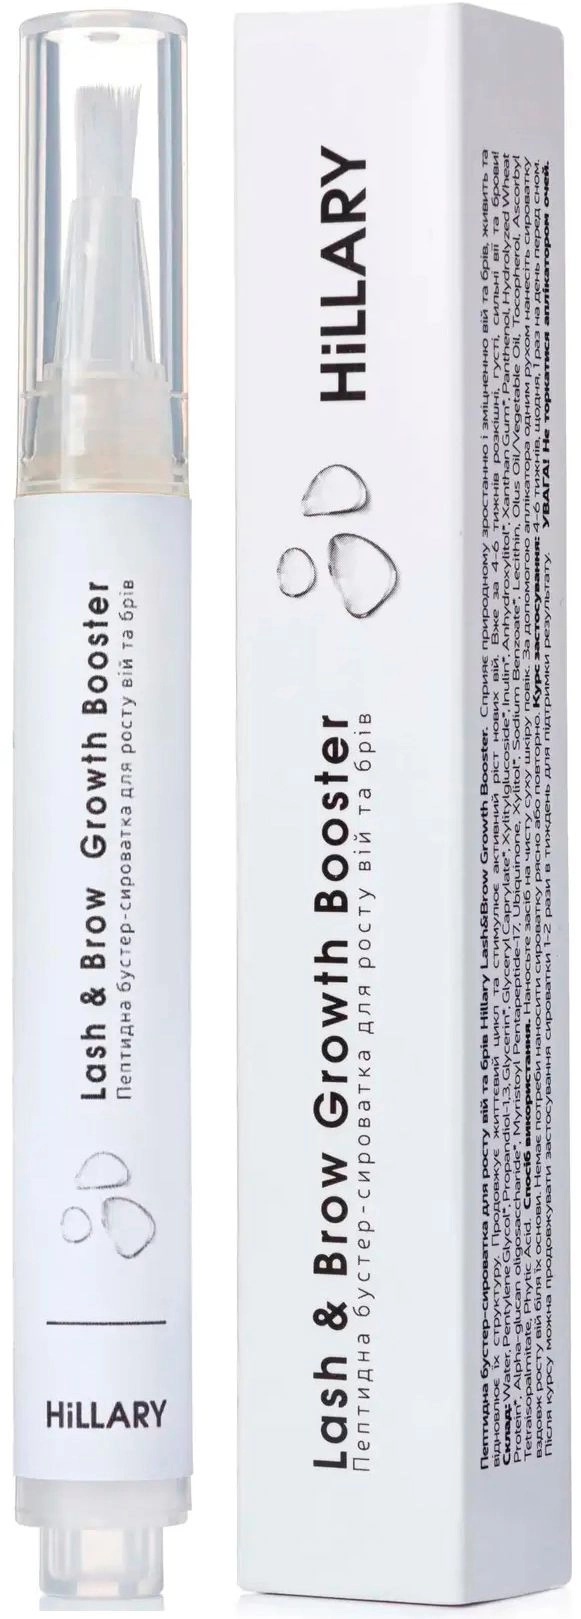 Пептидная бустер-сыворотка для роста ресниц и бровей - Hillary Lash&Brow Growth Booster, 3 мл - фото N1